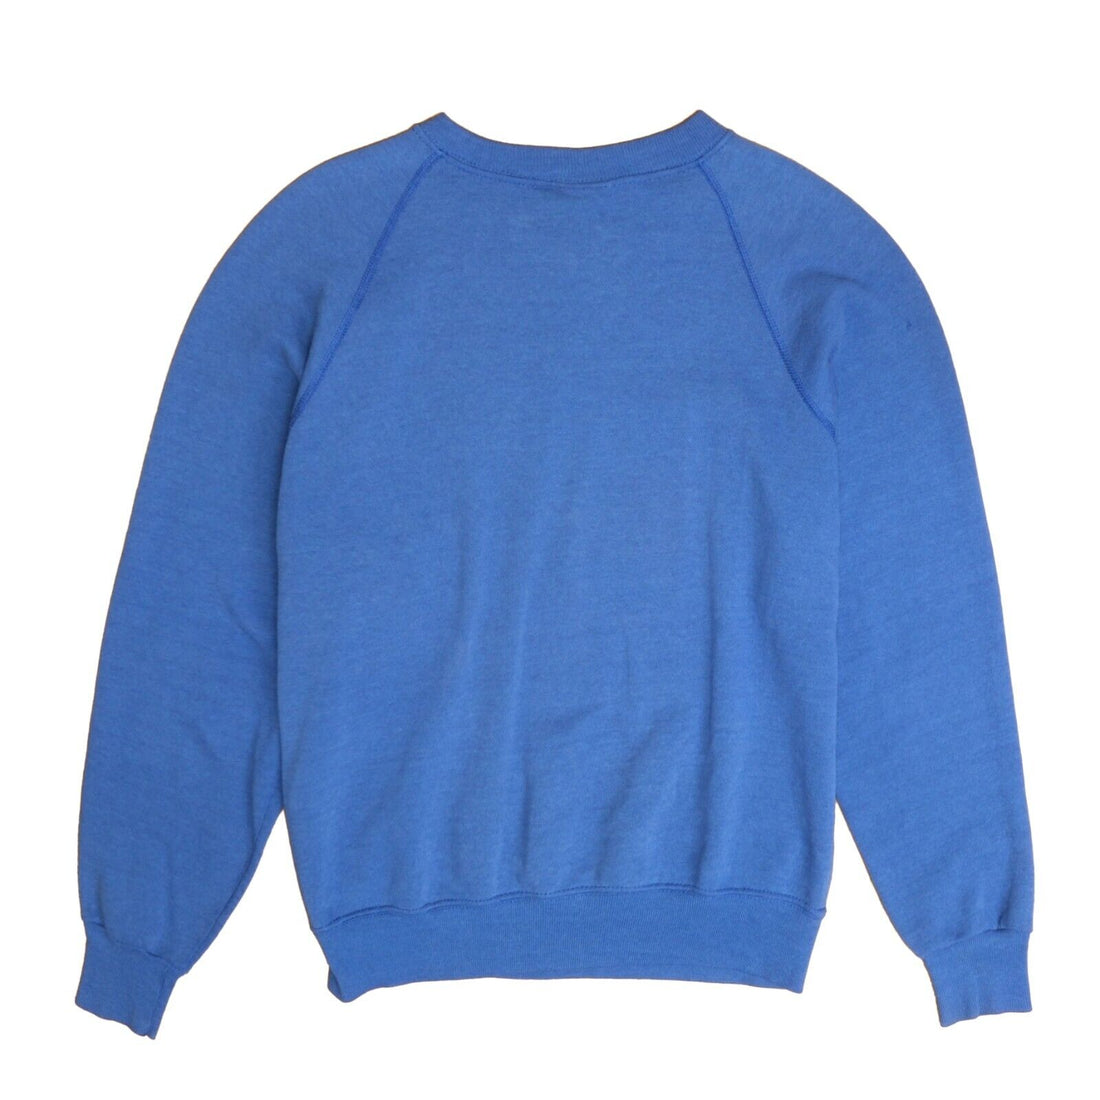 Vintage University Of Norway Sweatshirt Crewneck Size Large Blue 80s 90s